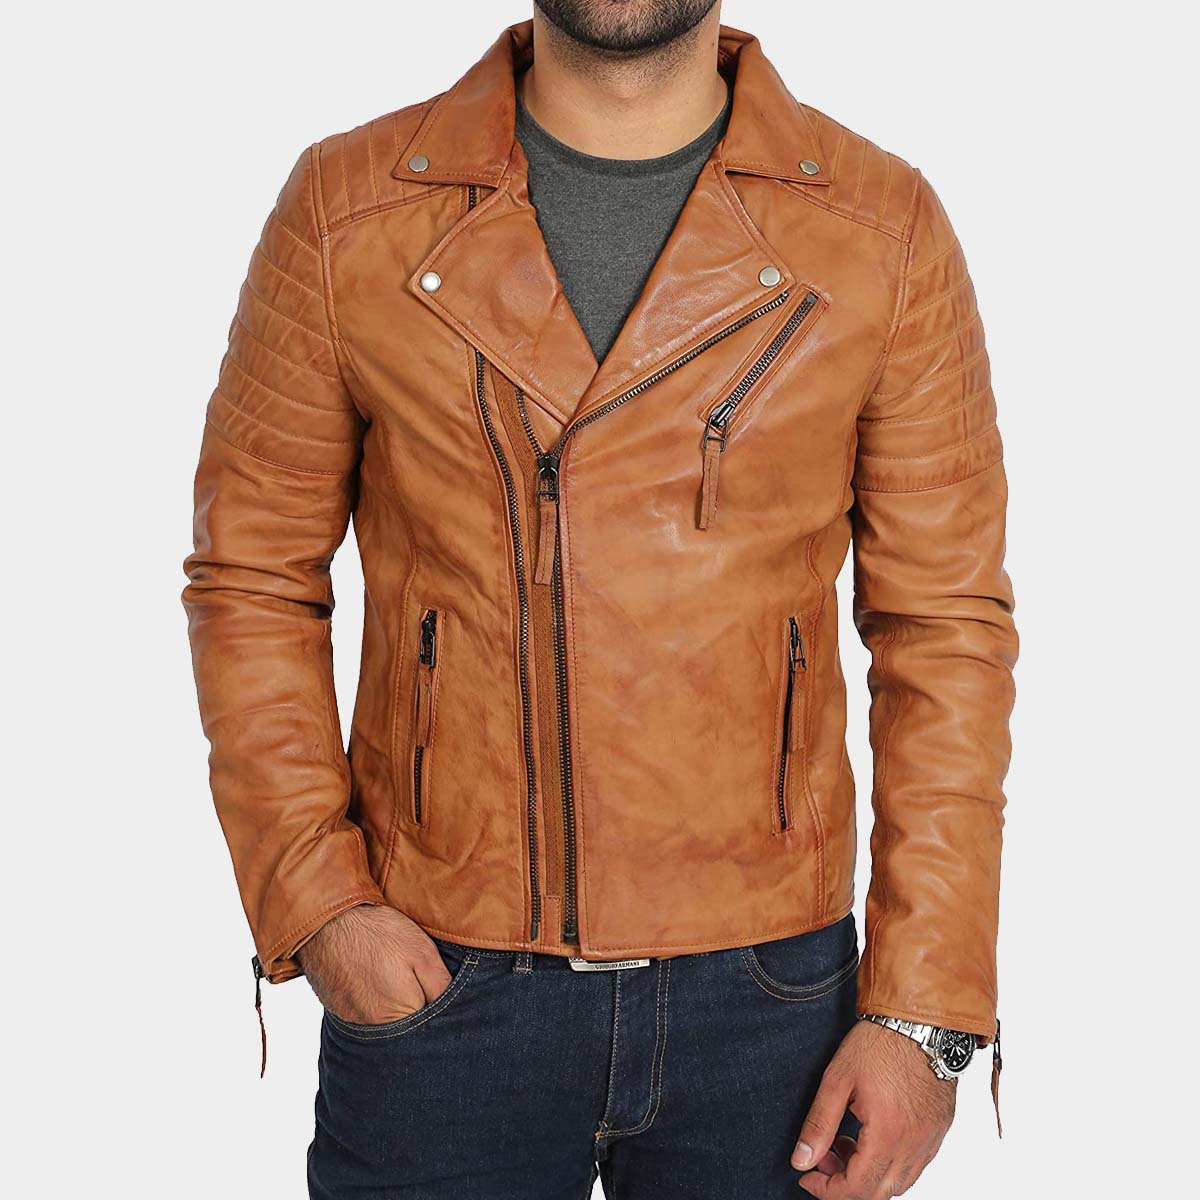 Distressed Brown Cafe Racer Leather Jacket – Men